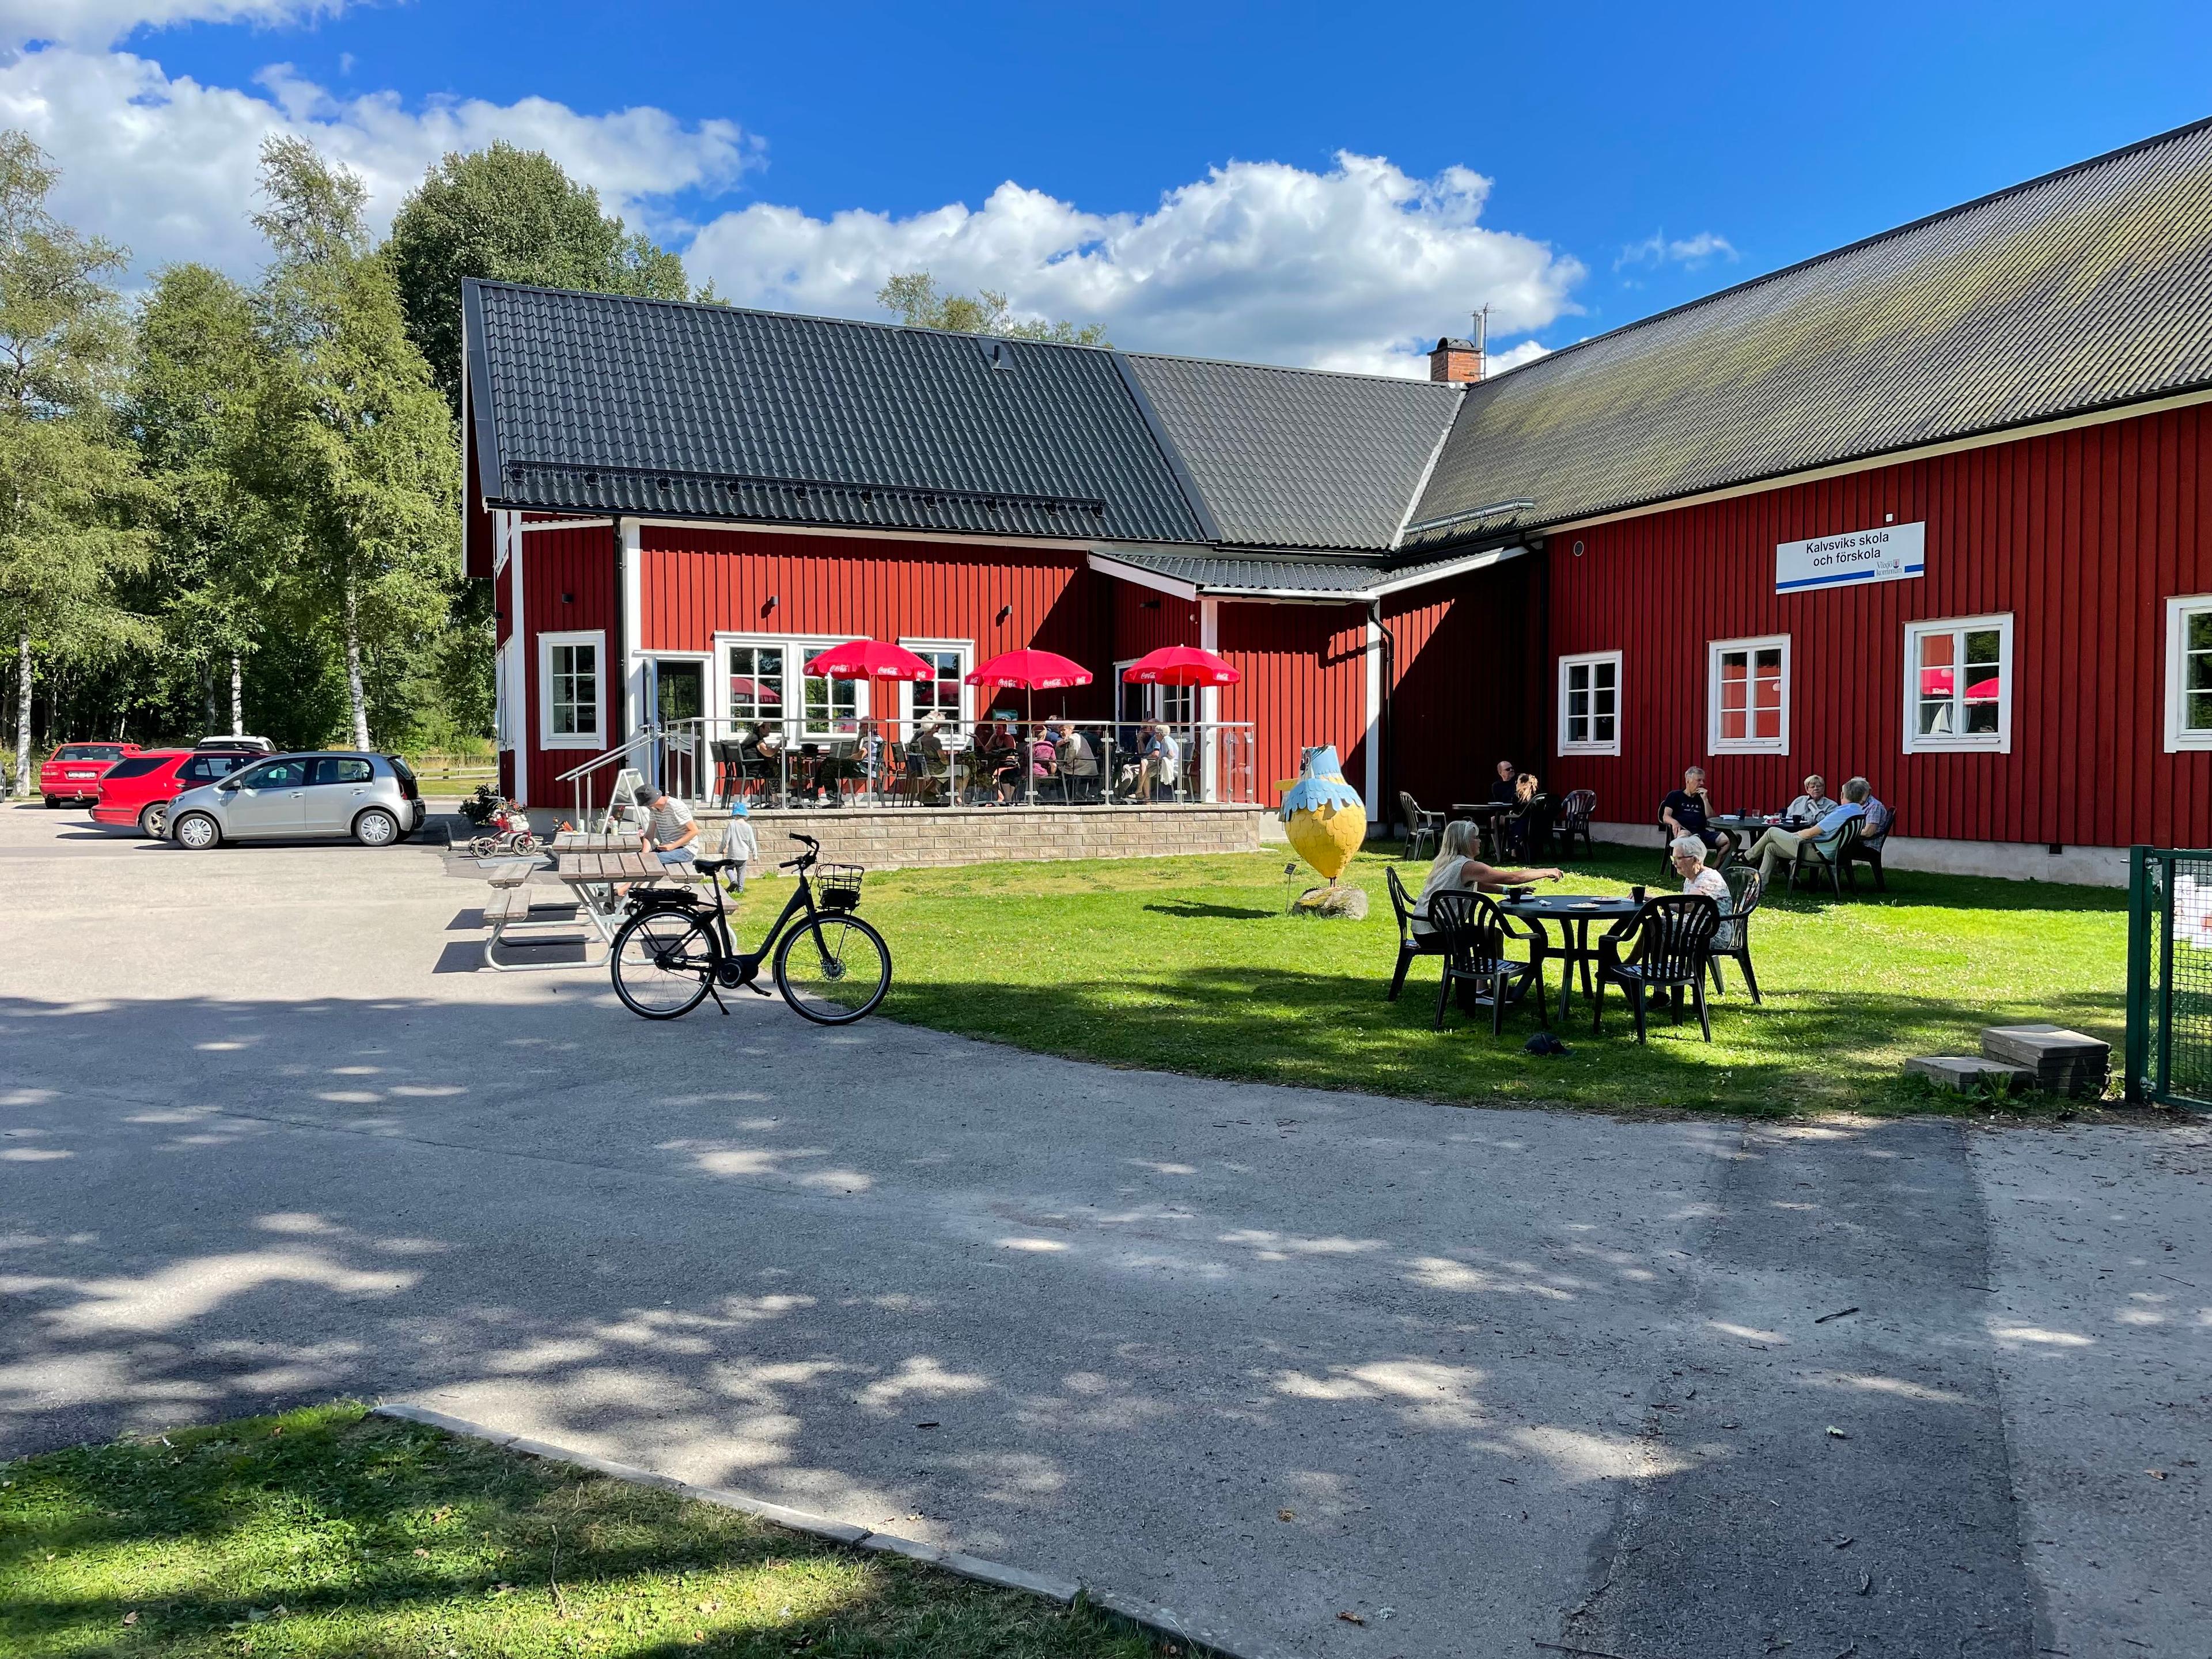 Kalvsviks Bygdegård, Kalvsvik, Sweden